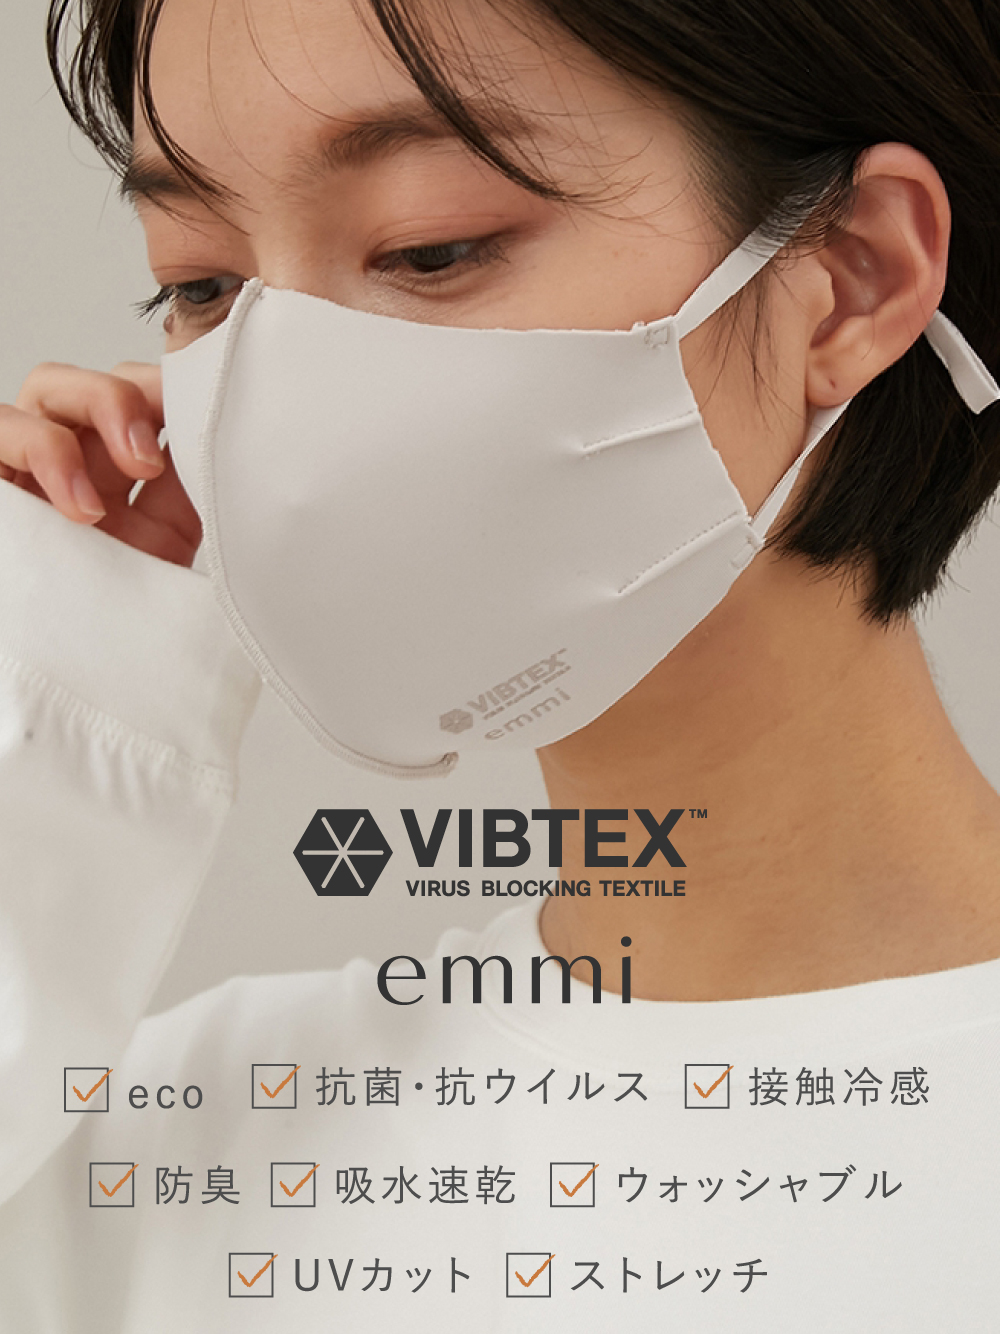 【emmi yoga】VIBTEX ポーチSet アジャスター付きマスク(LBEG-F)